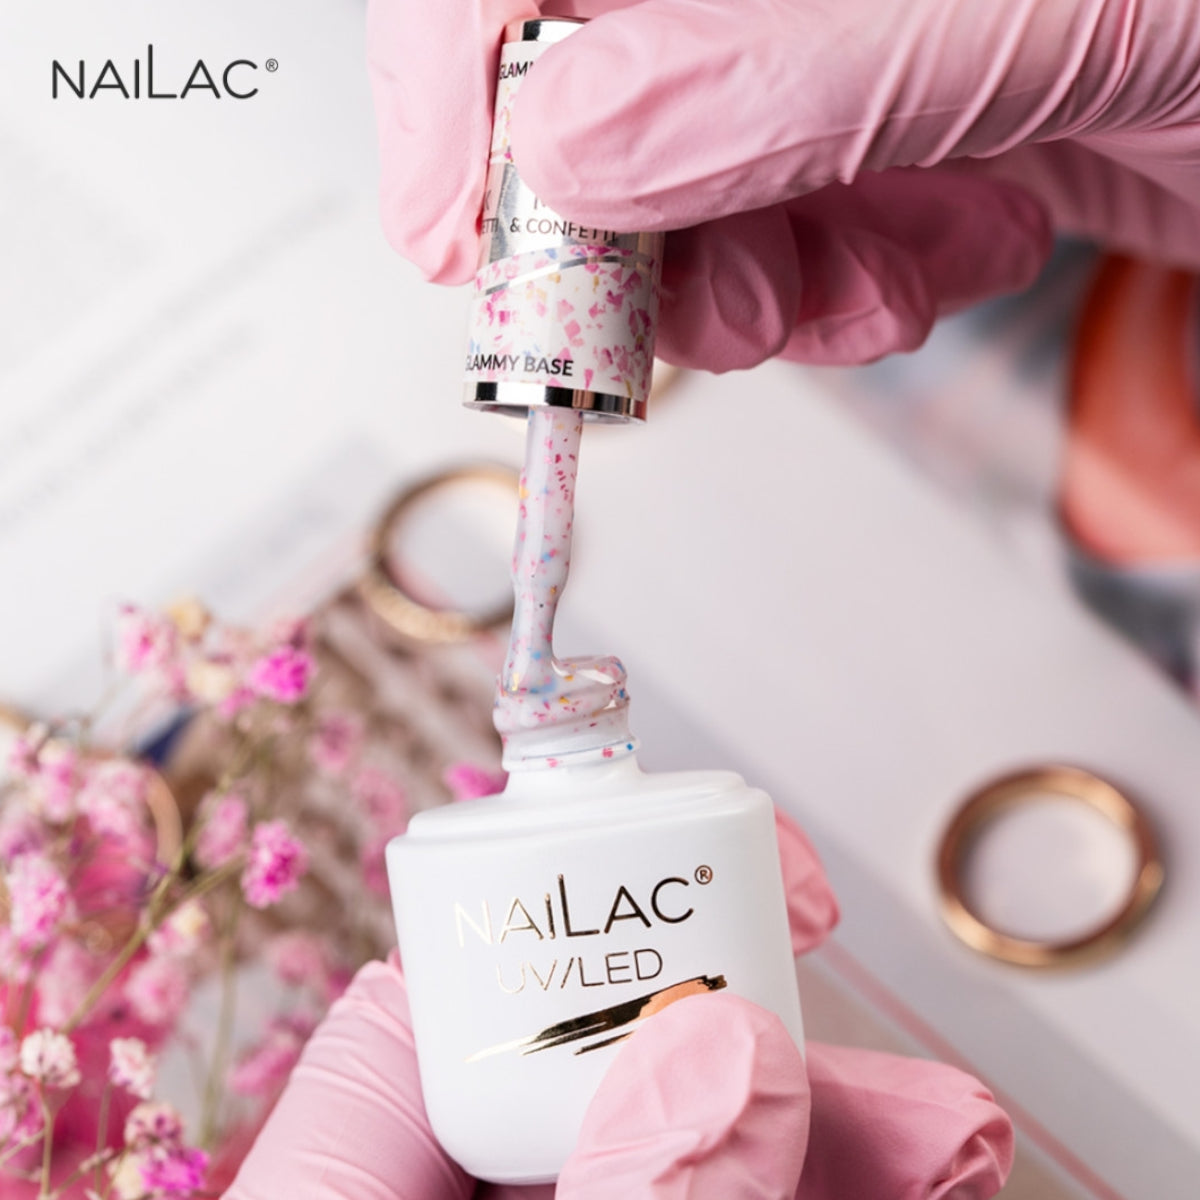 NaiLac Hybrid UV/LED Glammy Rubber Base Milk & Confetti Swatch